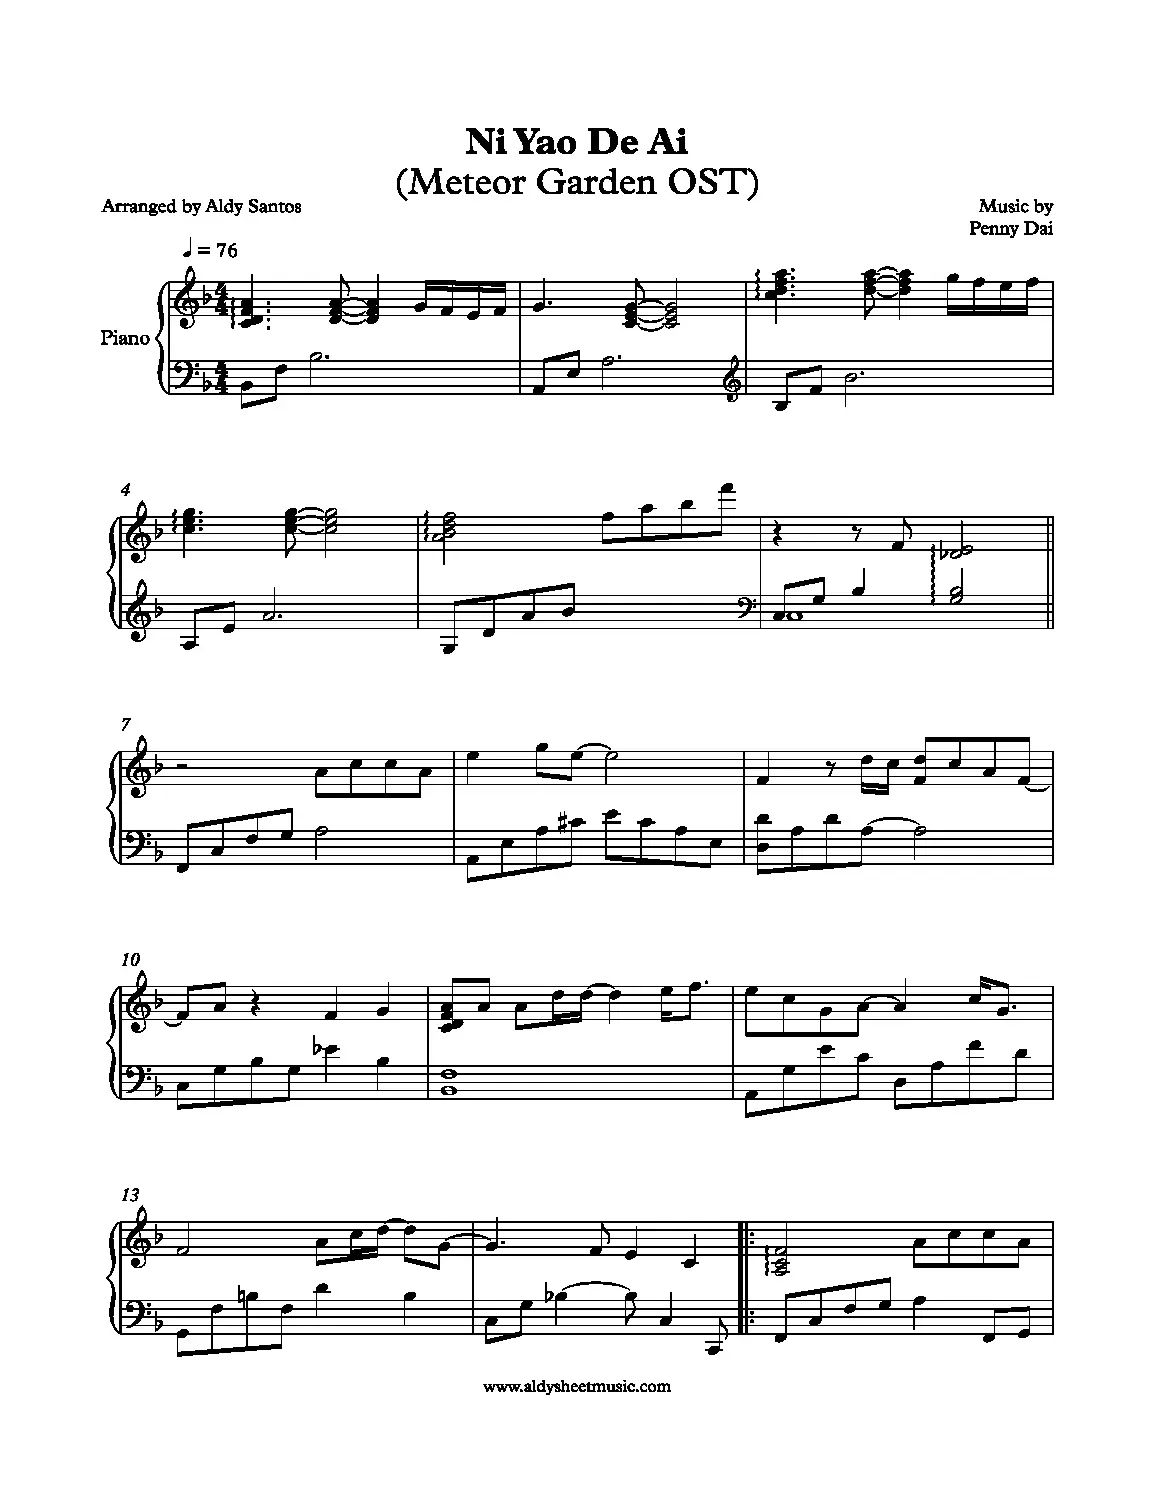 notas for you meteor garden violin - Does Darren Chen play violin